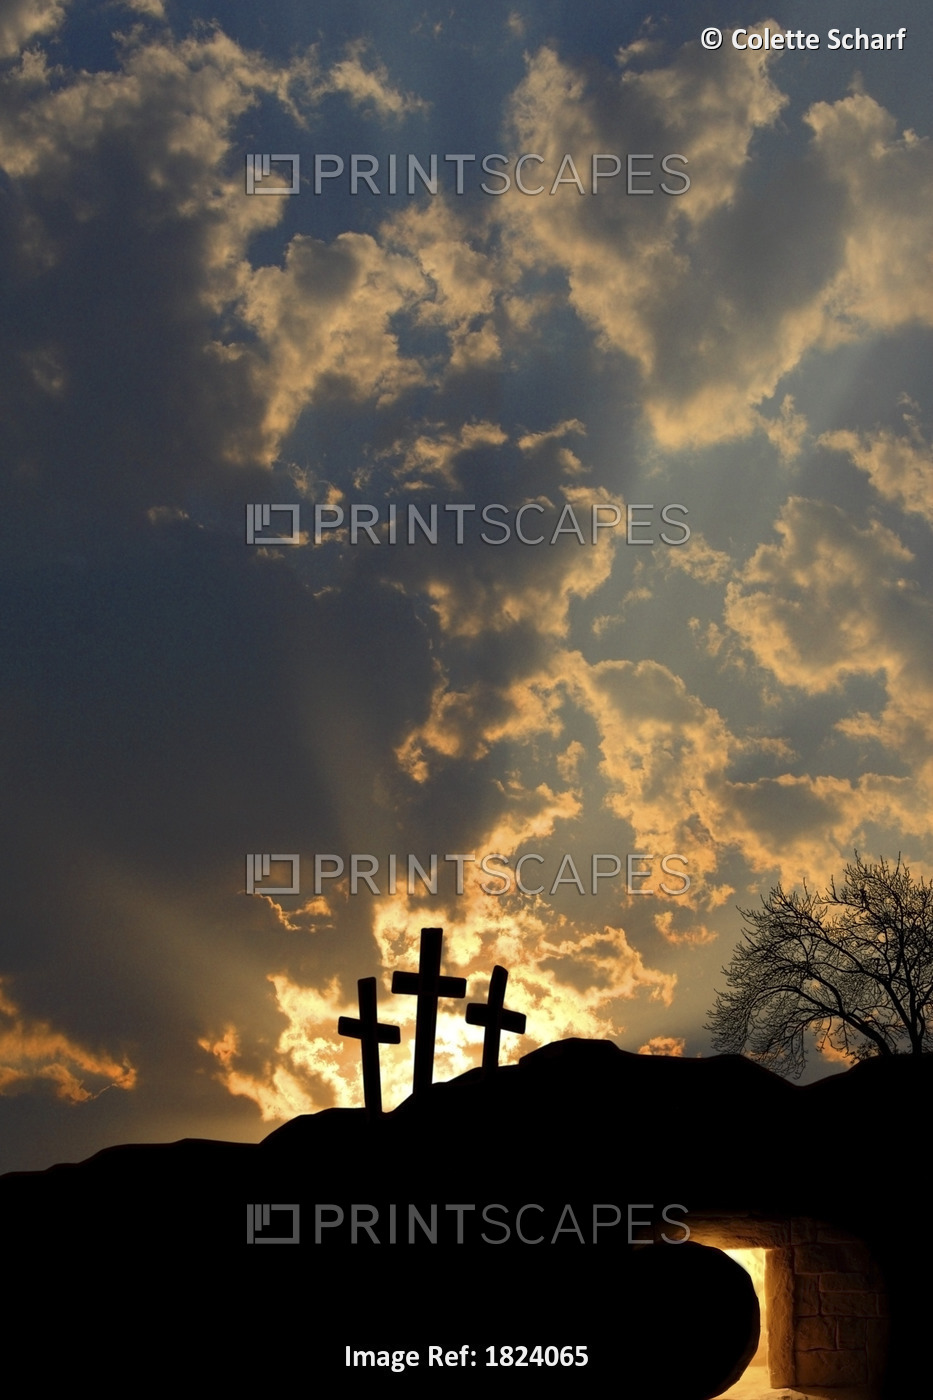 Empty Tomb And Three Crosses